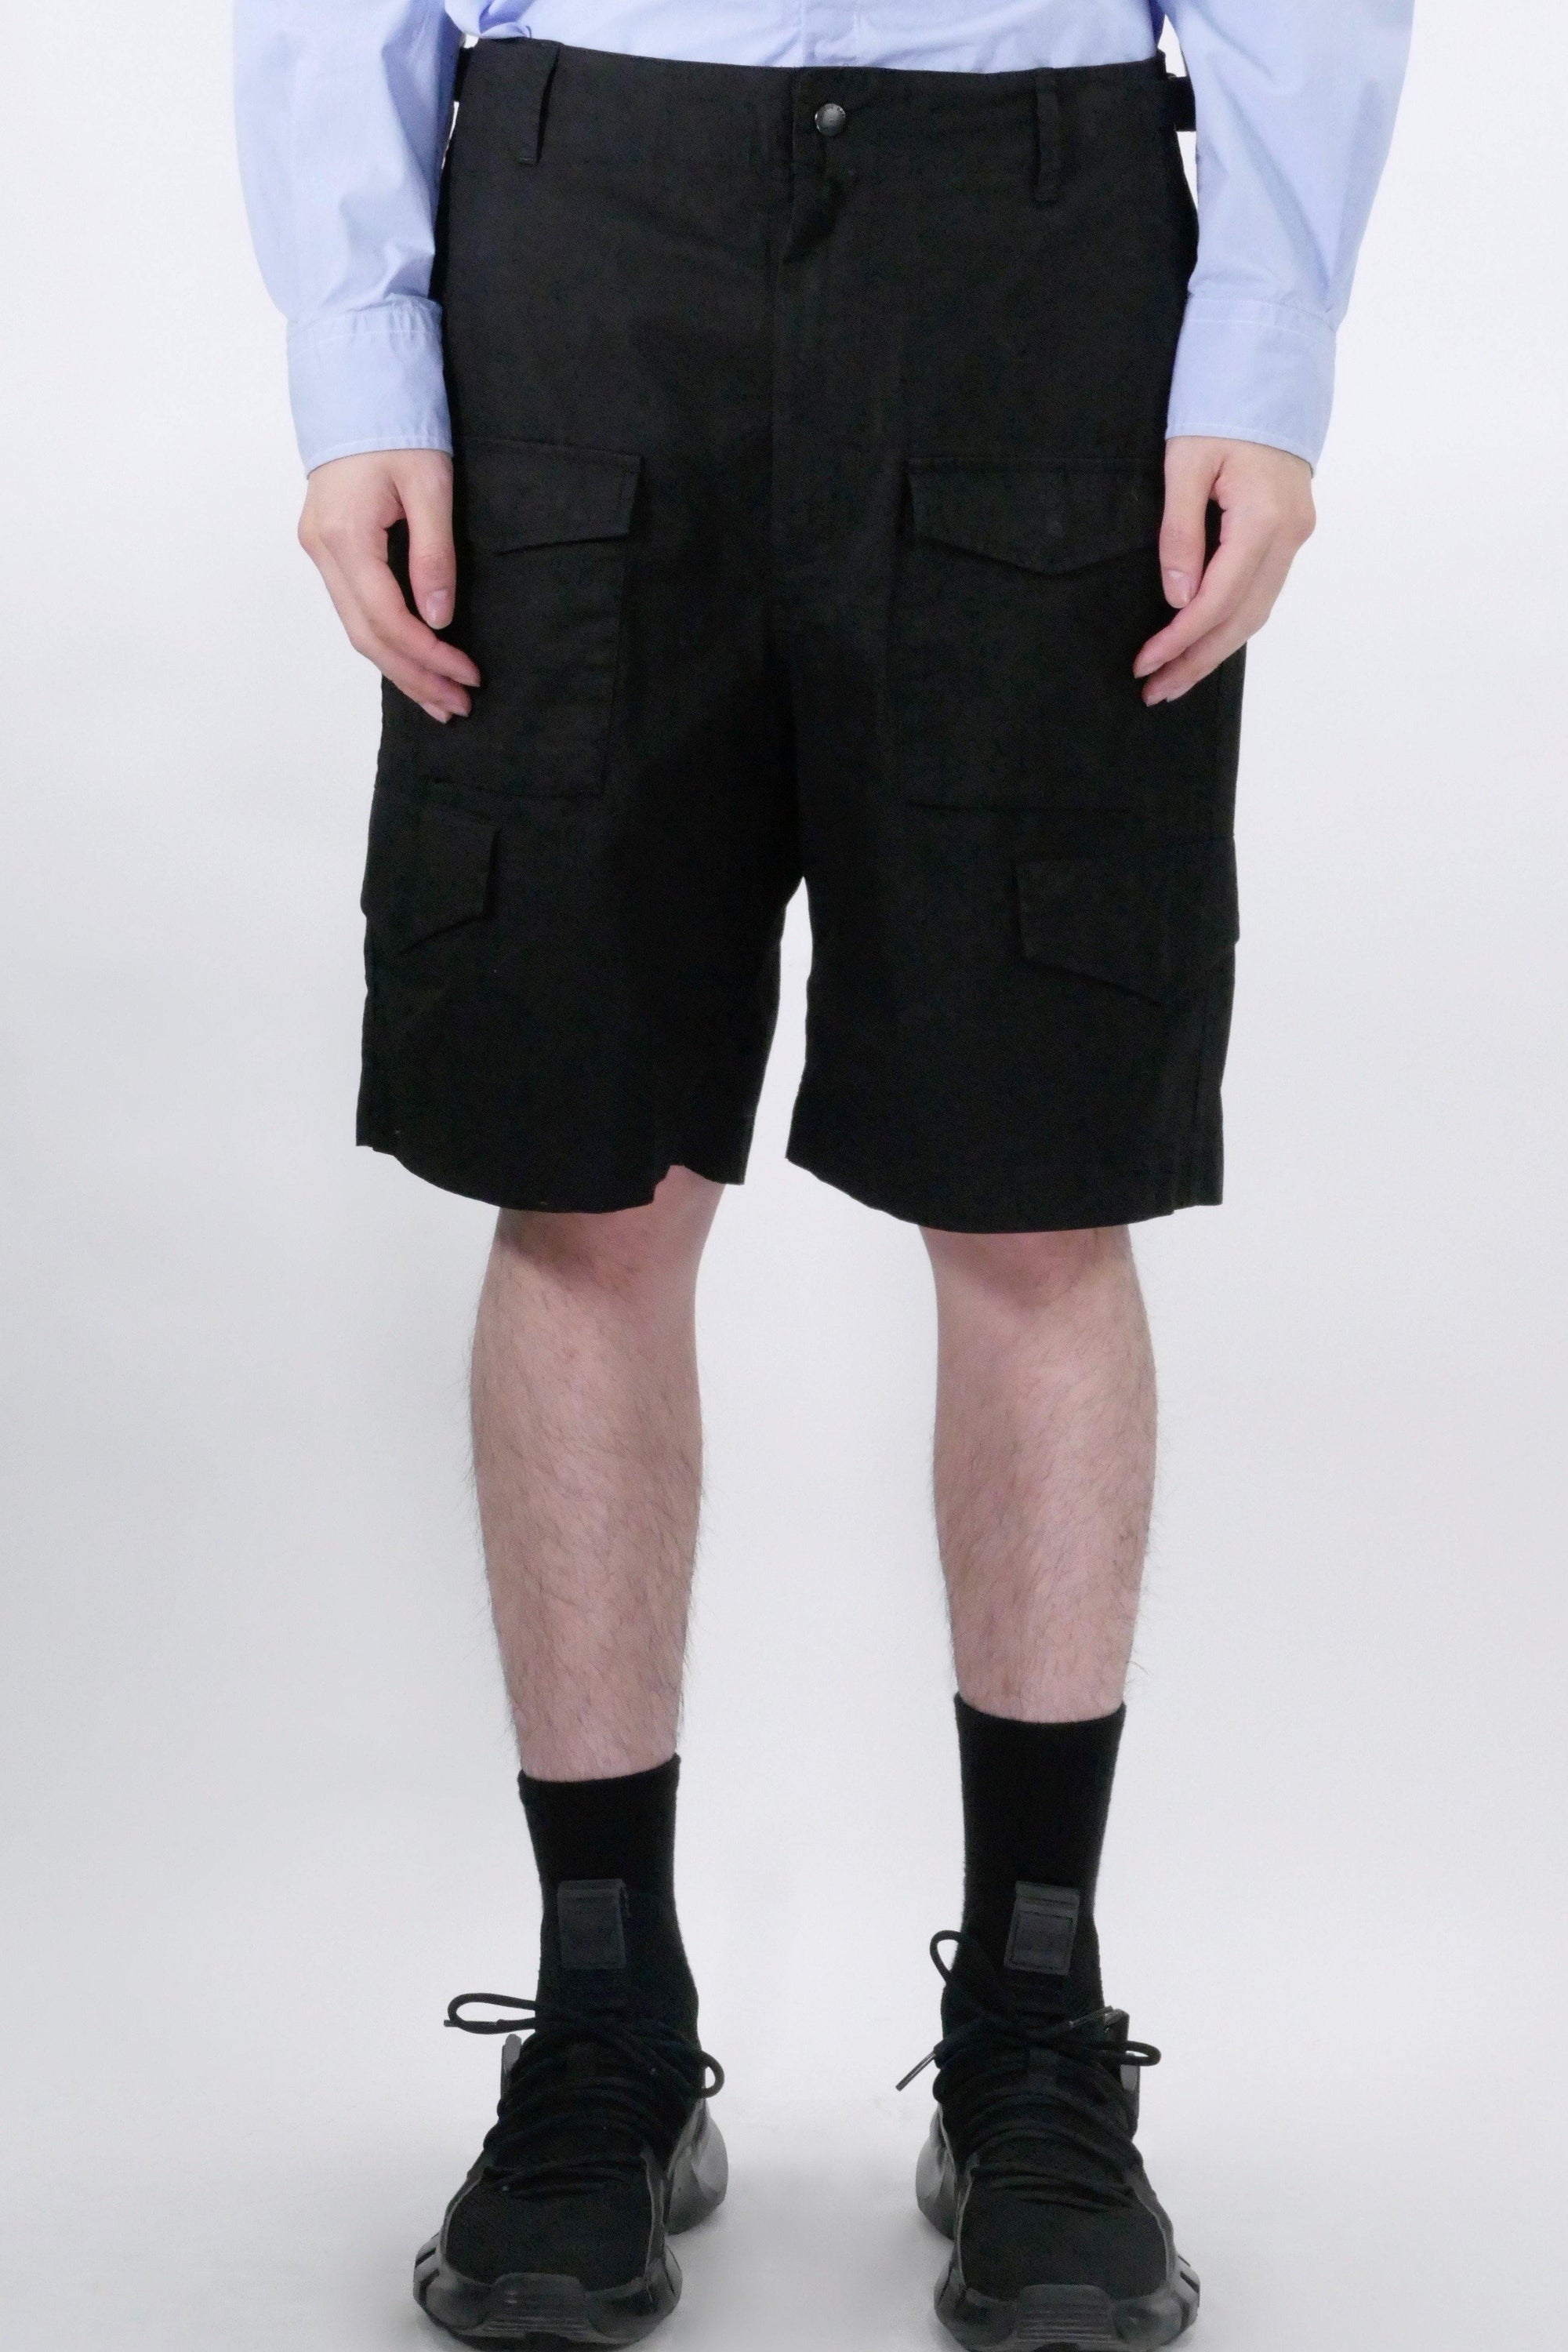 Eastlogue M65 Shorts - Black - Due West